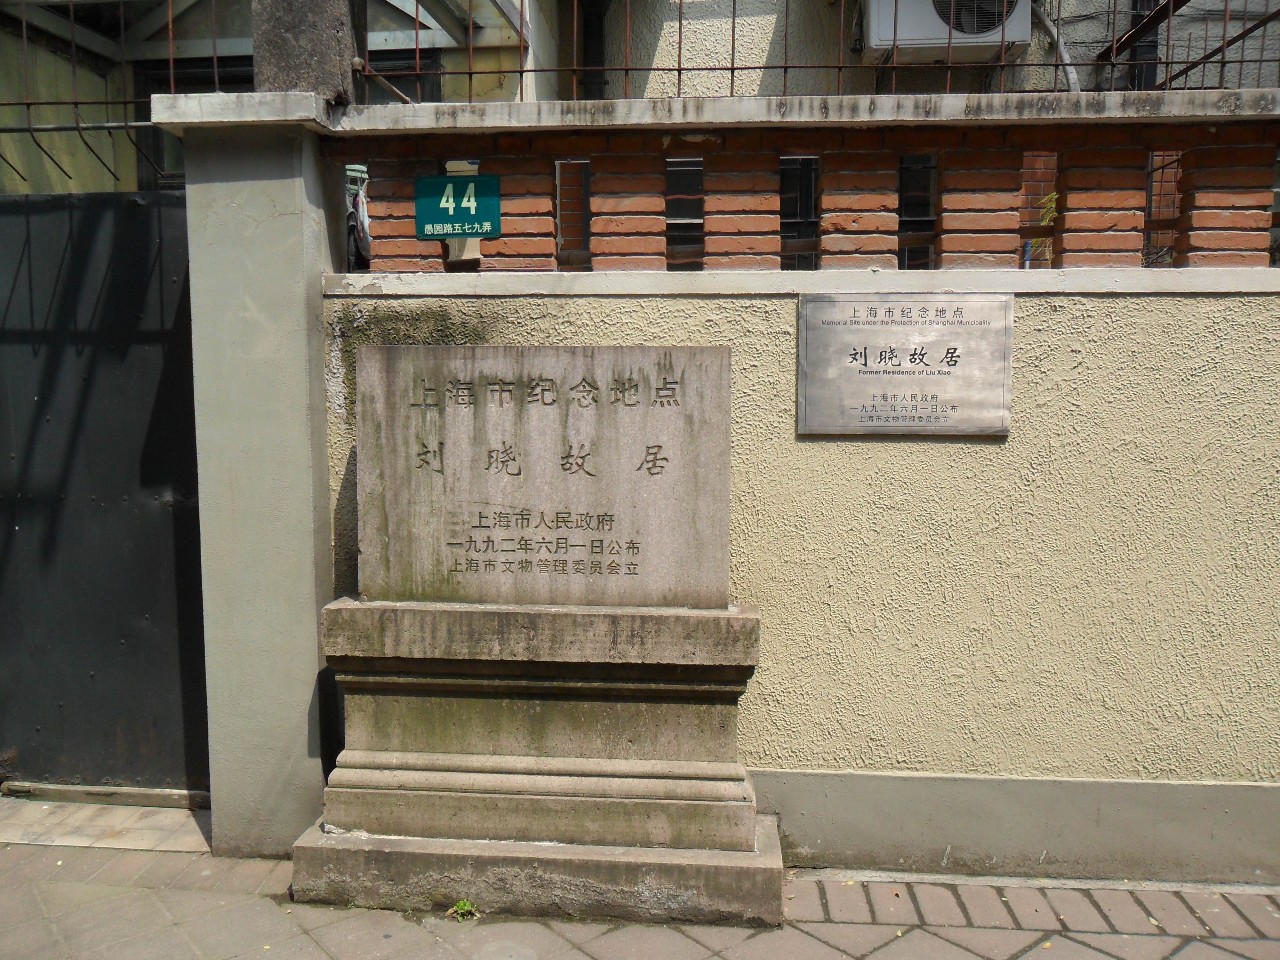 愚园路579弄44号刘晓故居——中共中央上海局的秘密机关之一向上滑动